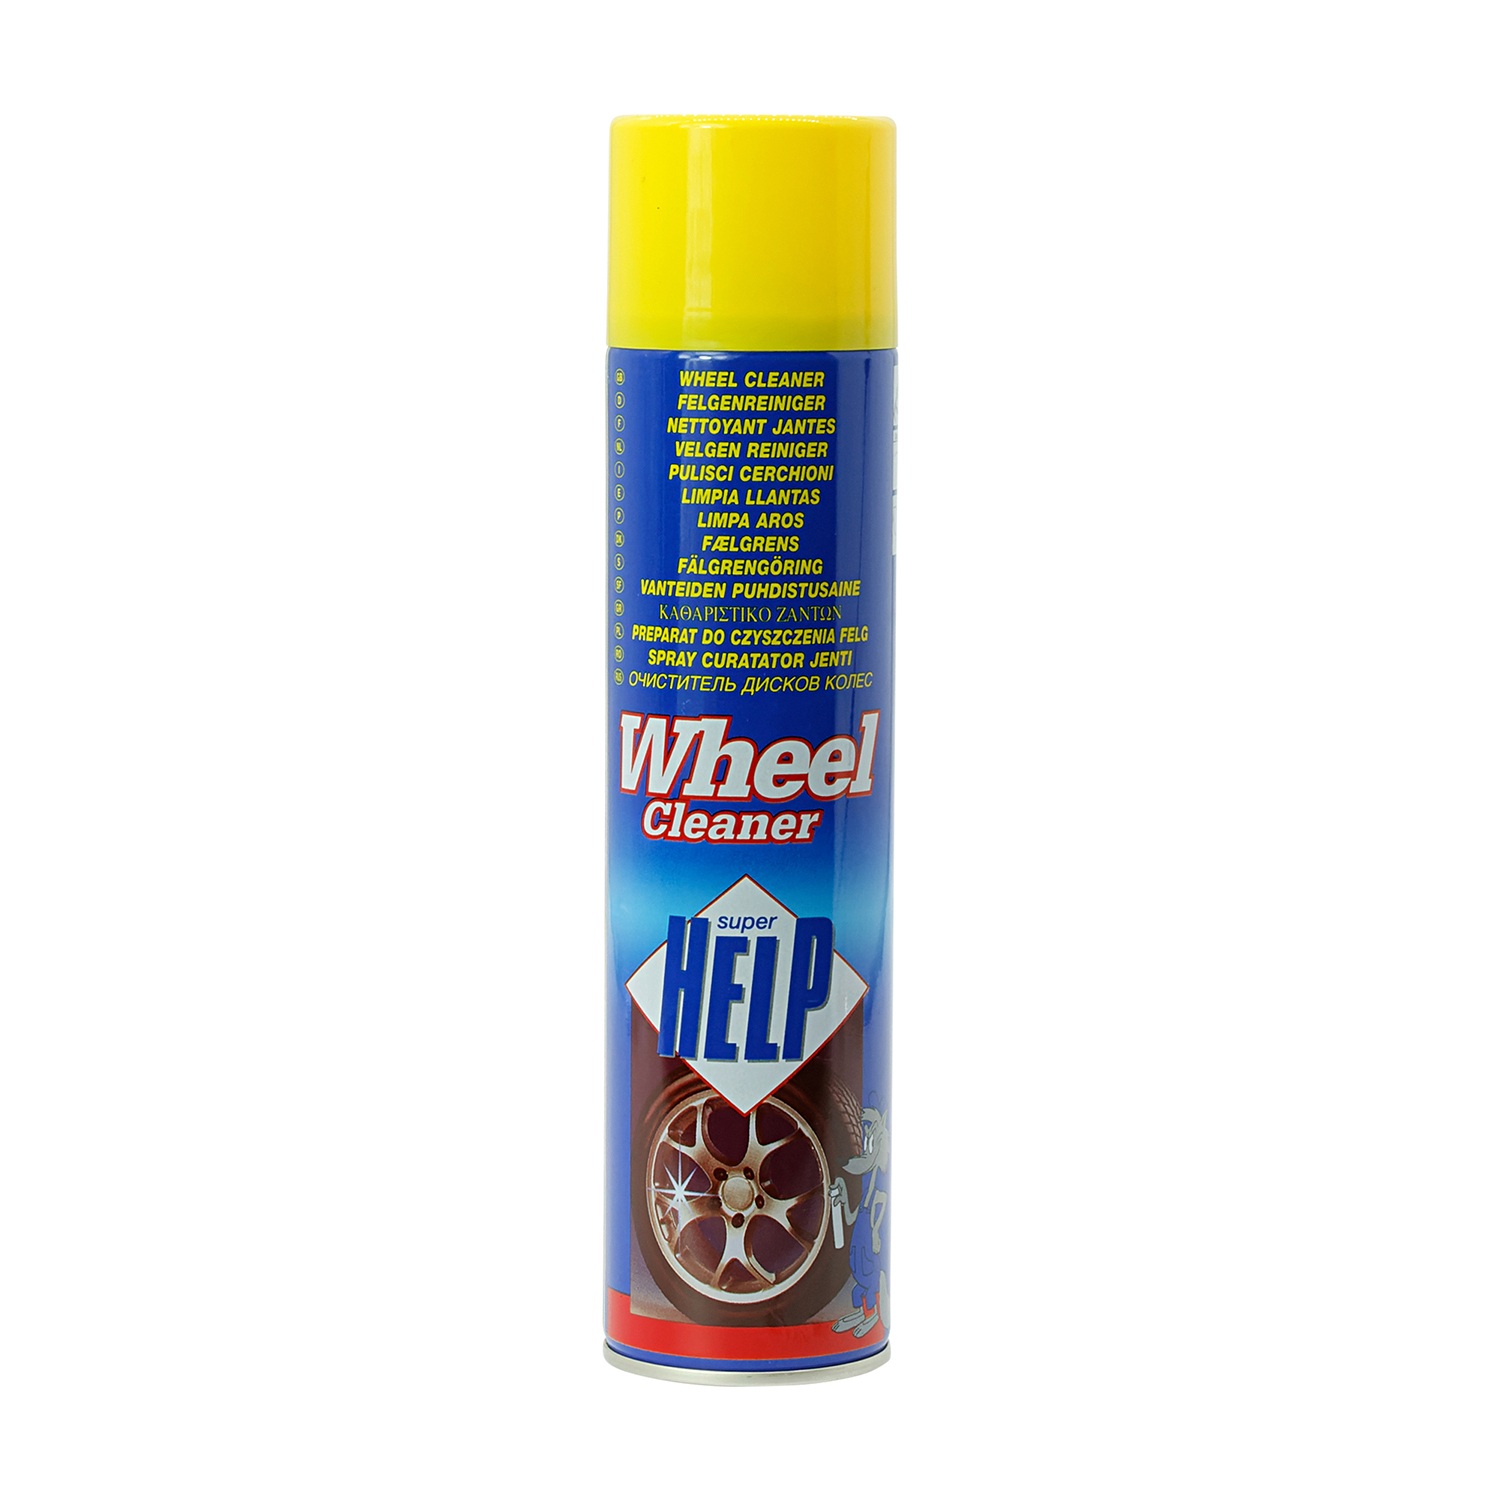 Felgenreiniger: Super Help Wheel Cleaner 400 ml